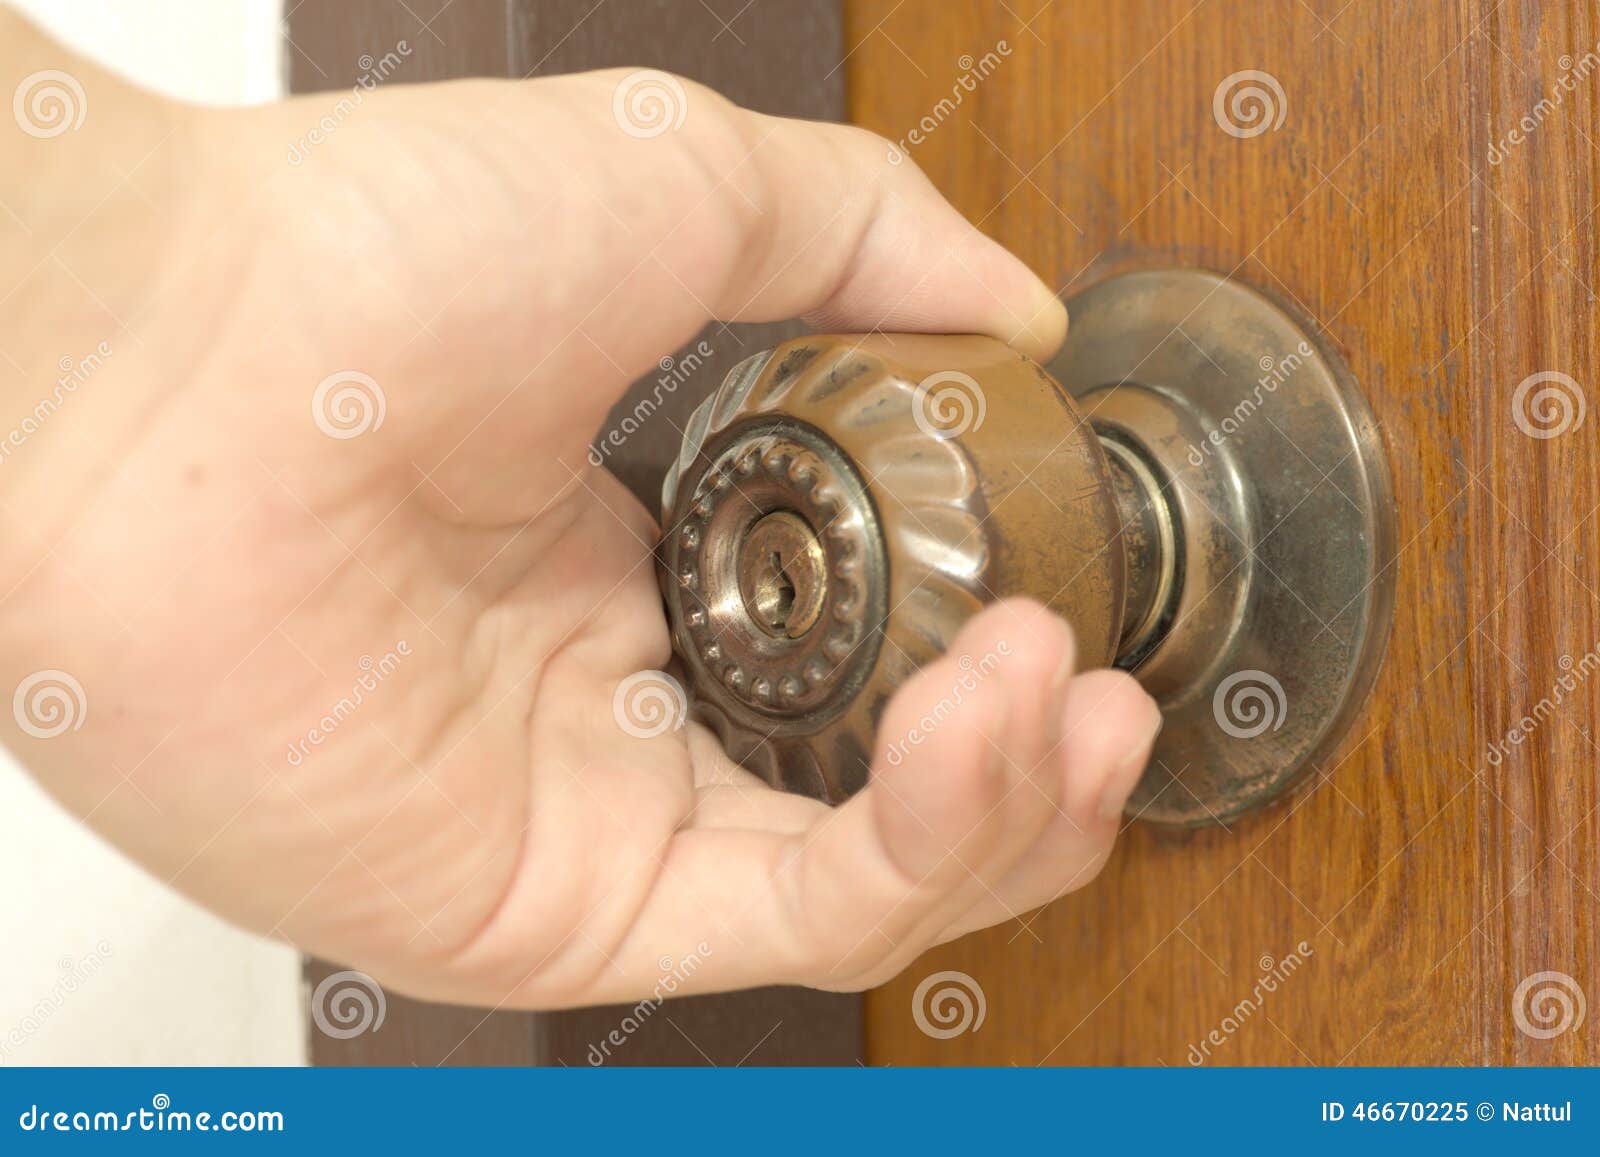 closeup of male hand opening door knob